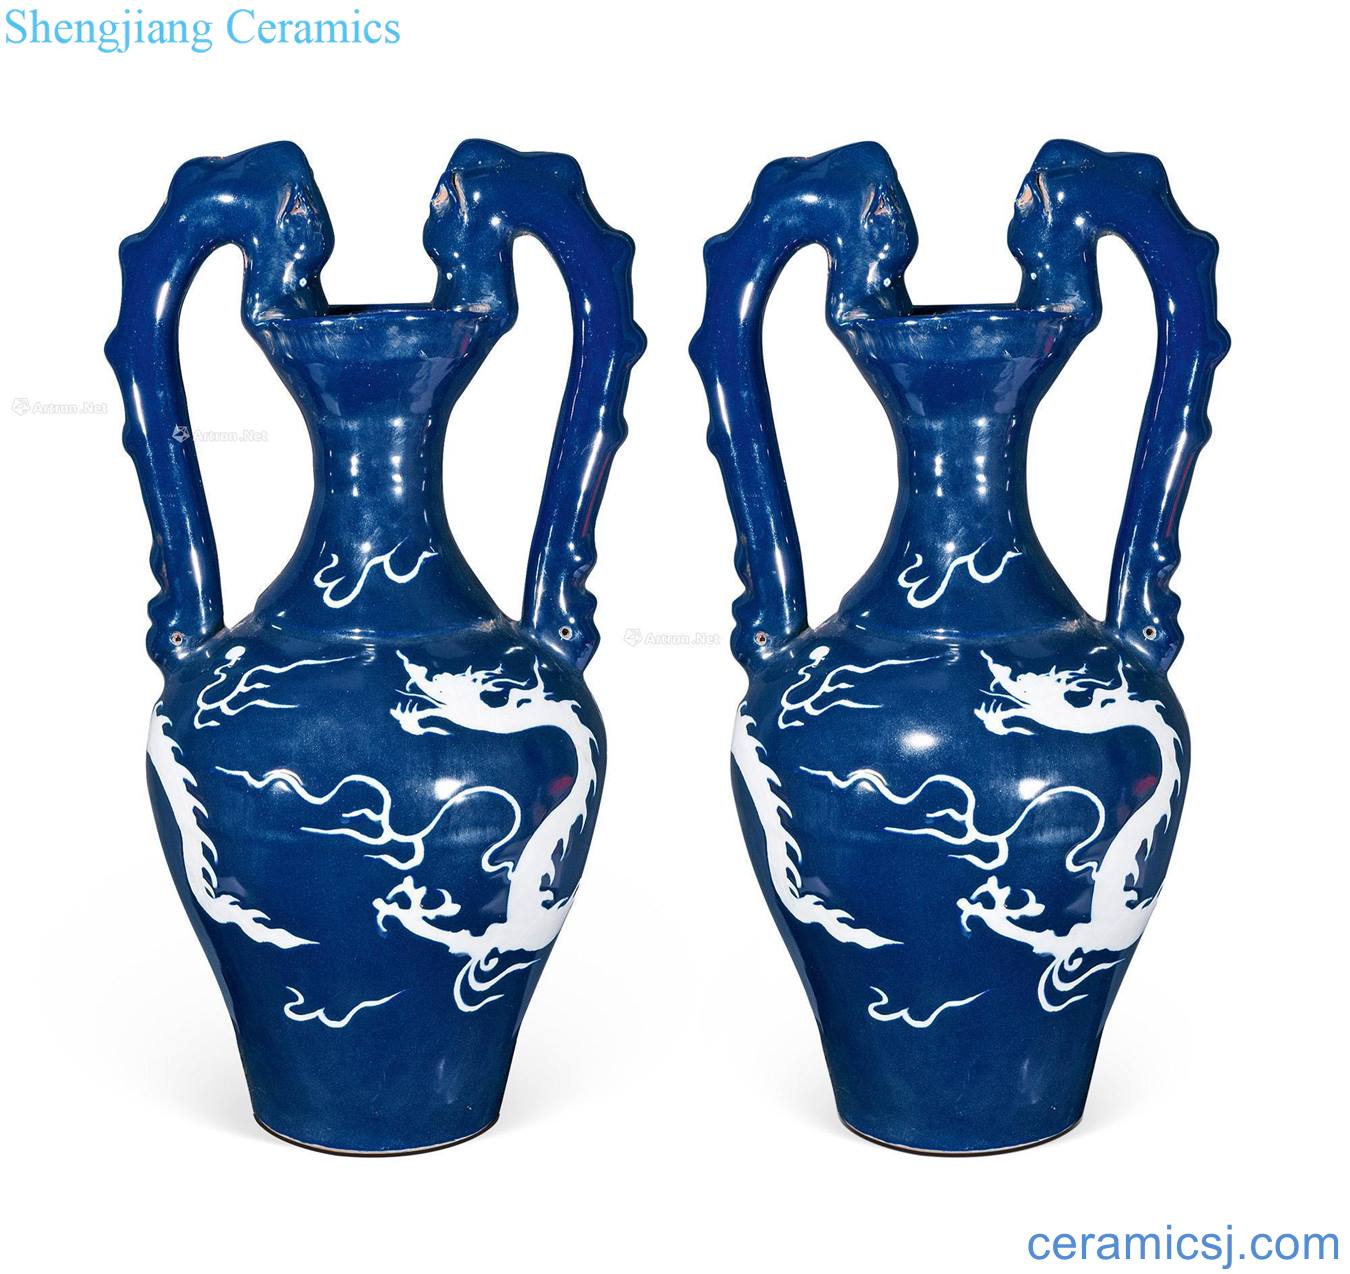 yuan Ji blue glaze ssangyong bottle (a)